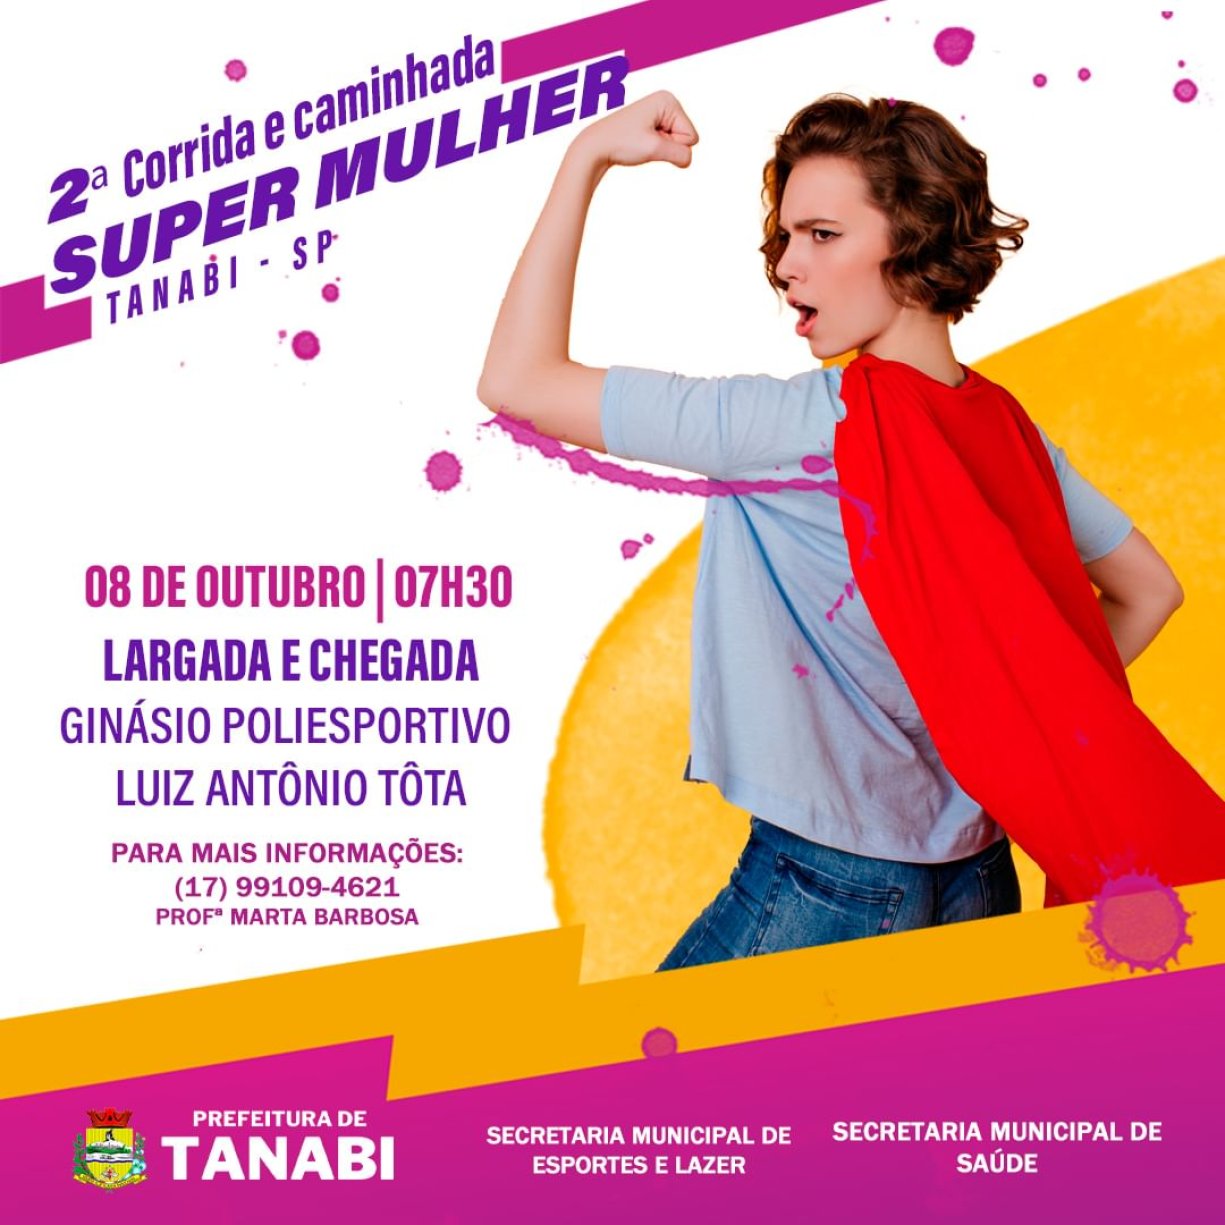 Junte-se a nós na 2ª Corrida e Caminhada Super Mulher em Tanabi!